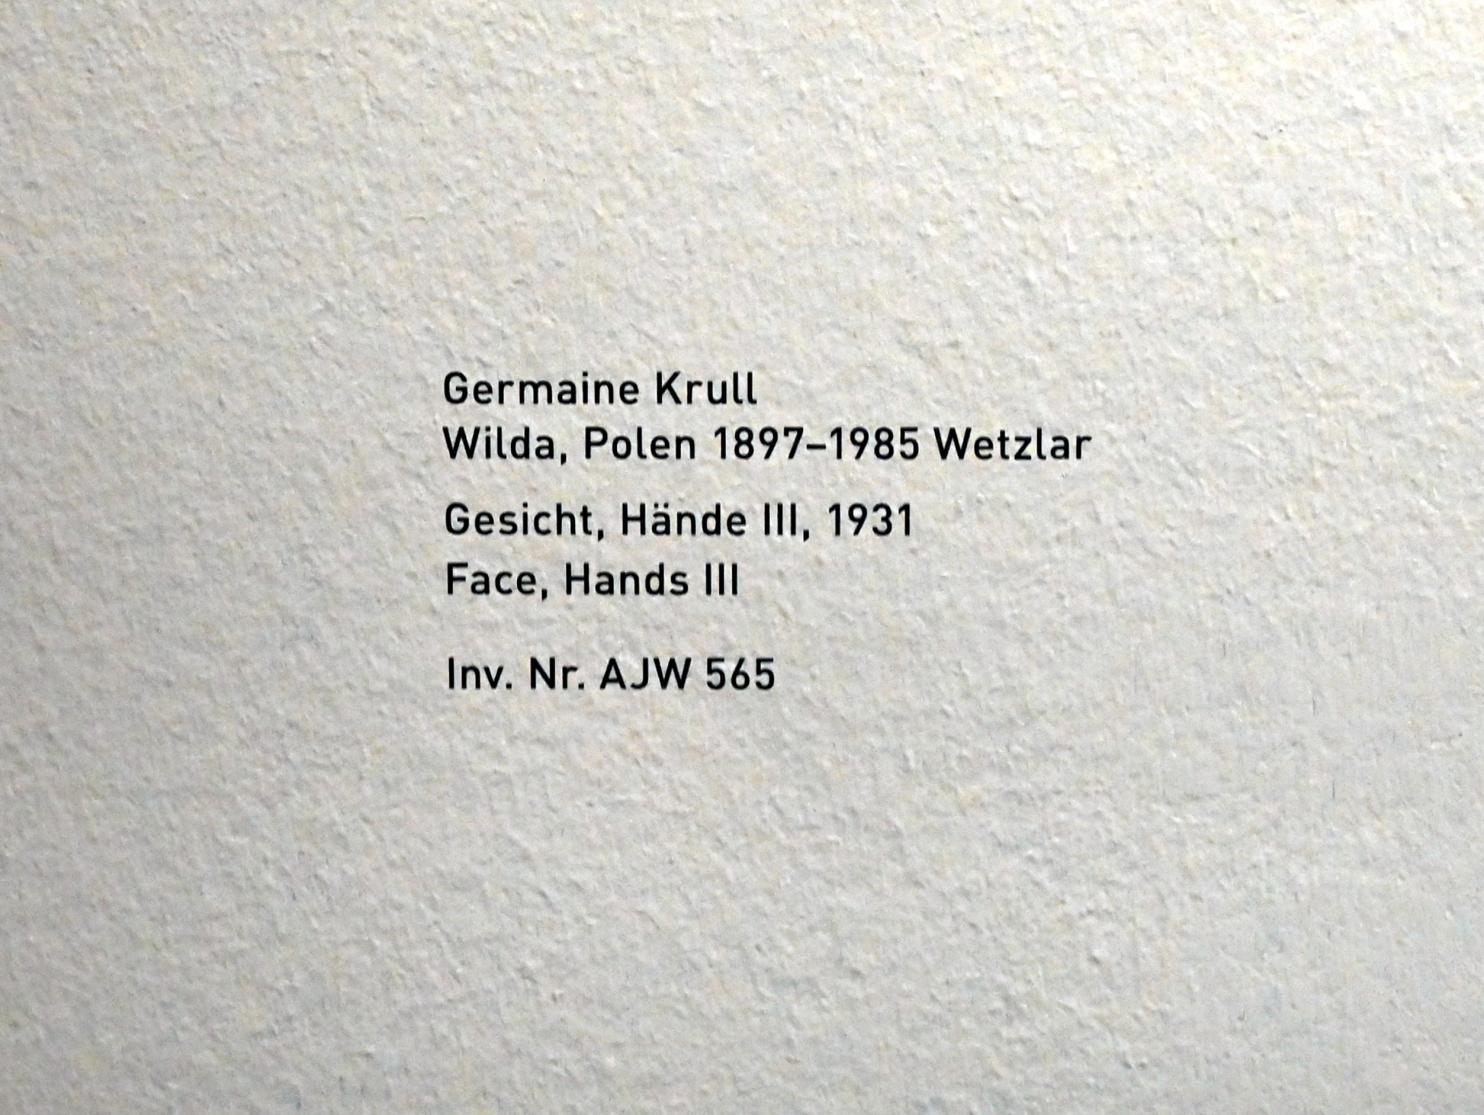 Germaine Krull: Gesicht, Hände III, 1931, Bild 2/2